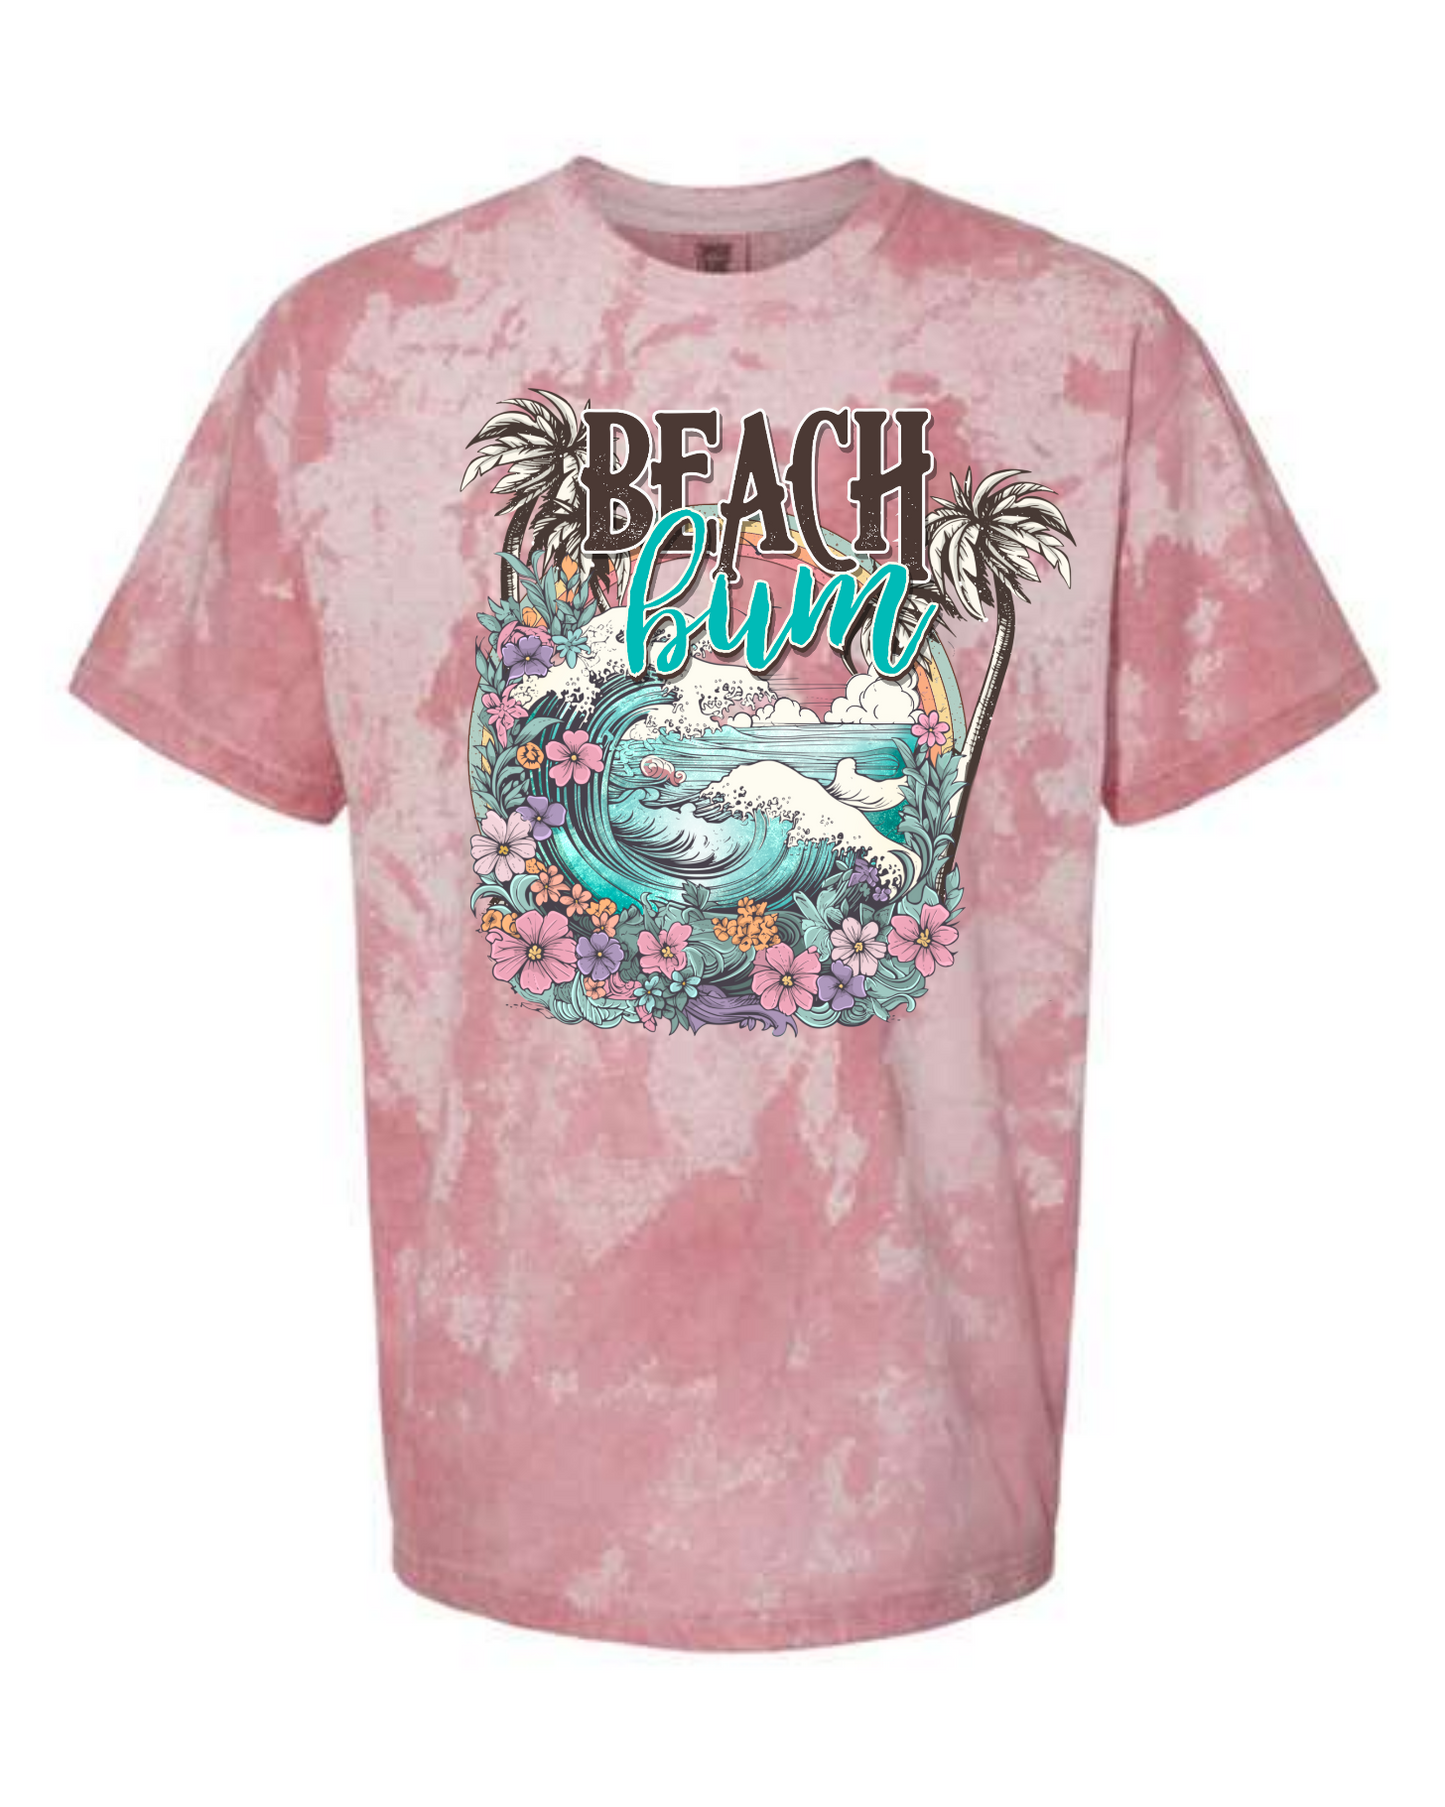 Beach Bum Shirt